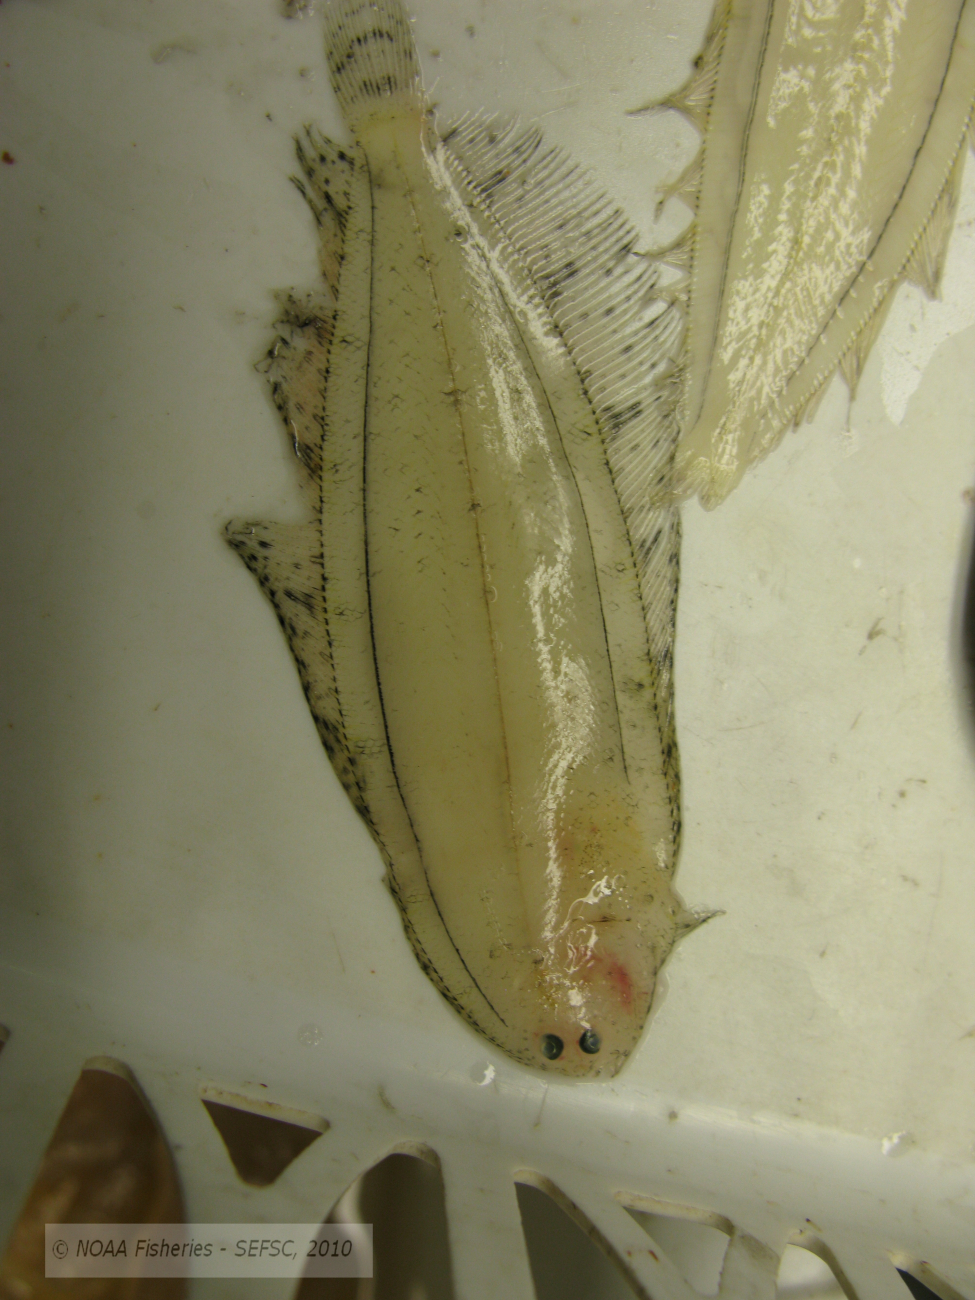 Flatfish larvae